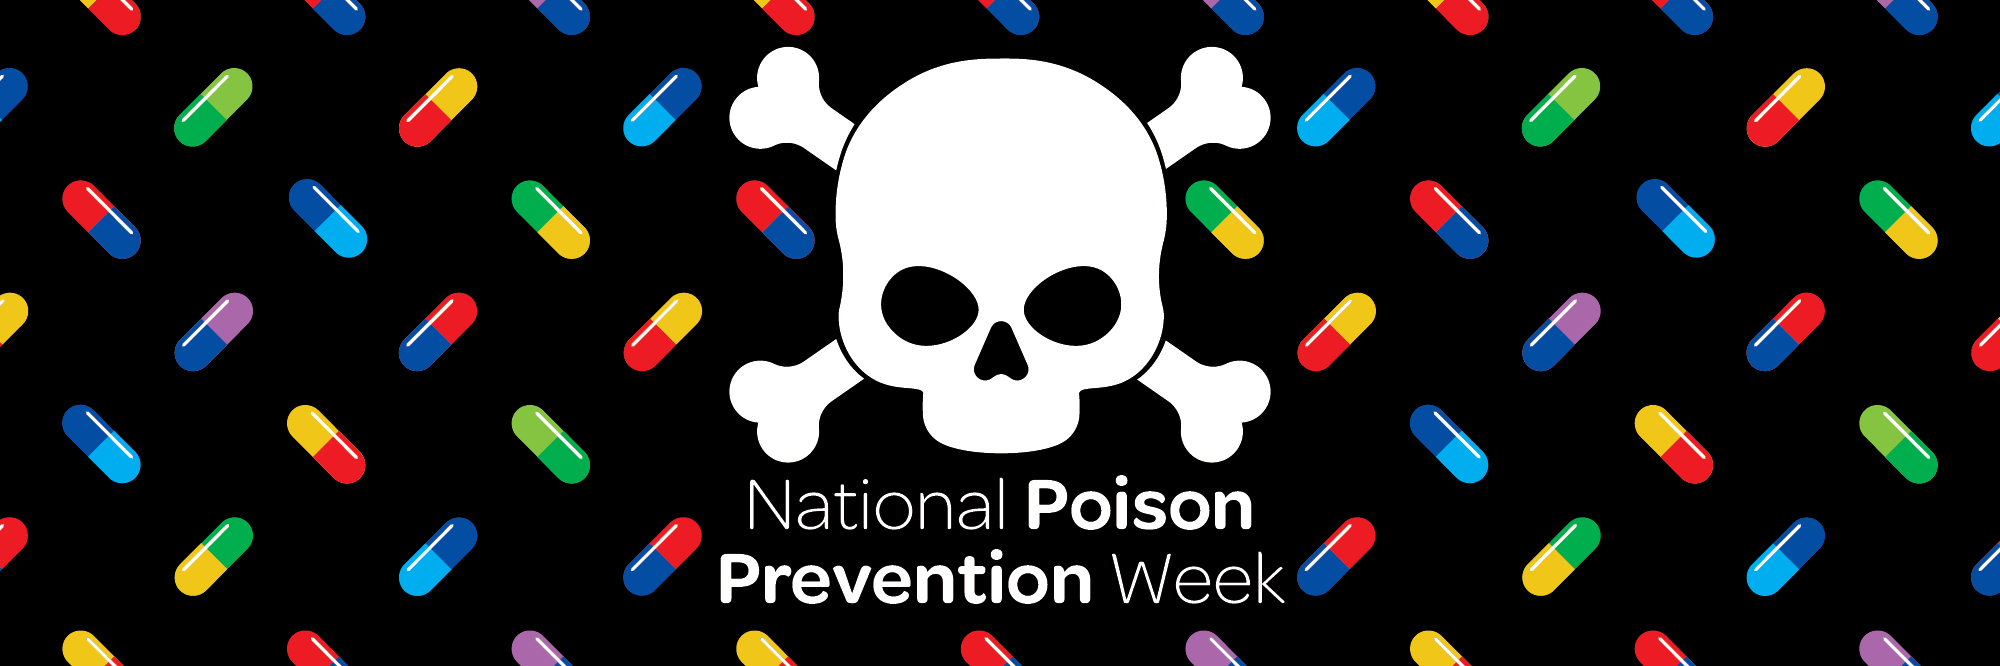 skull and crossbones for Poison Prevention Week